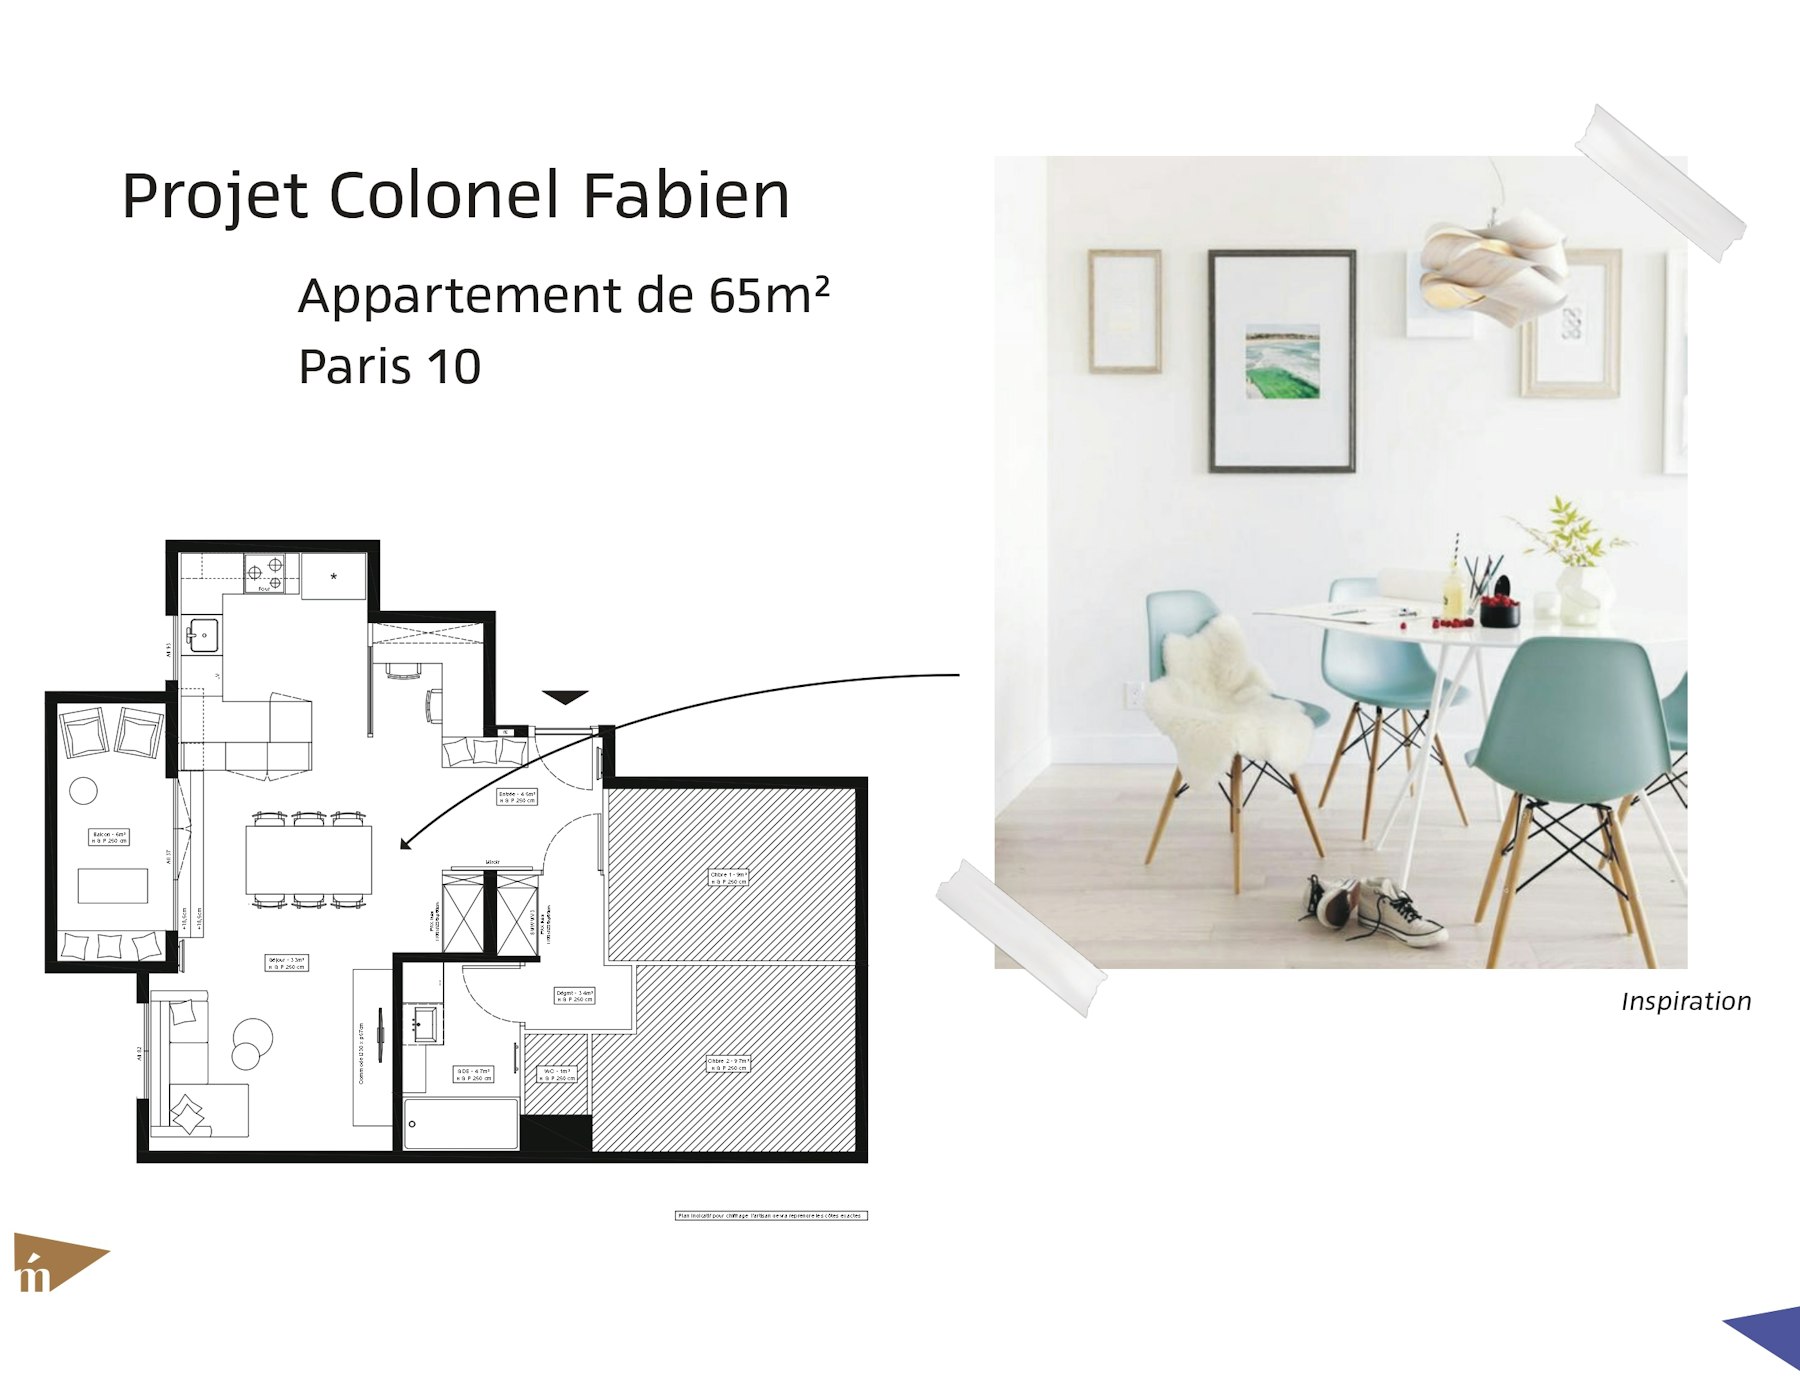 photo Projet Colonel Fabien - Appartement 65 m² - Paris 10 Léa Mast - Architecte hemea